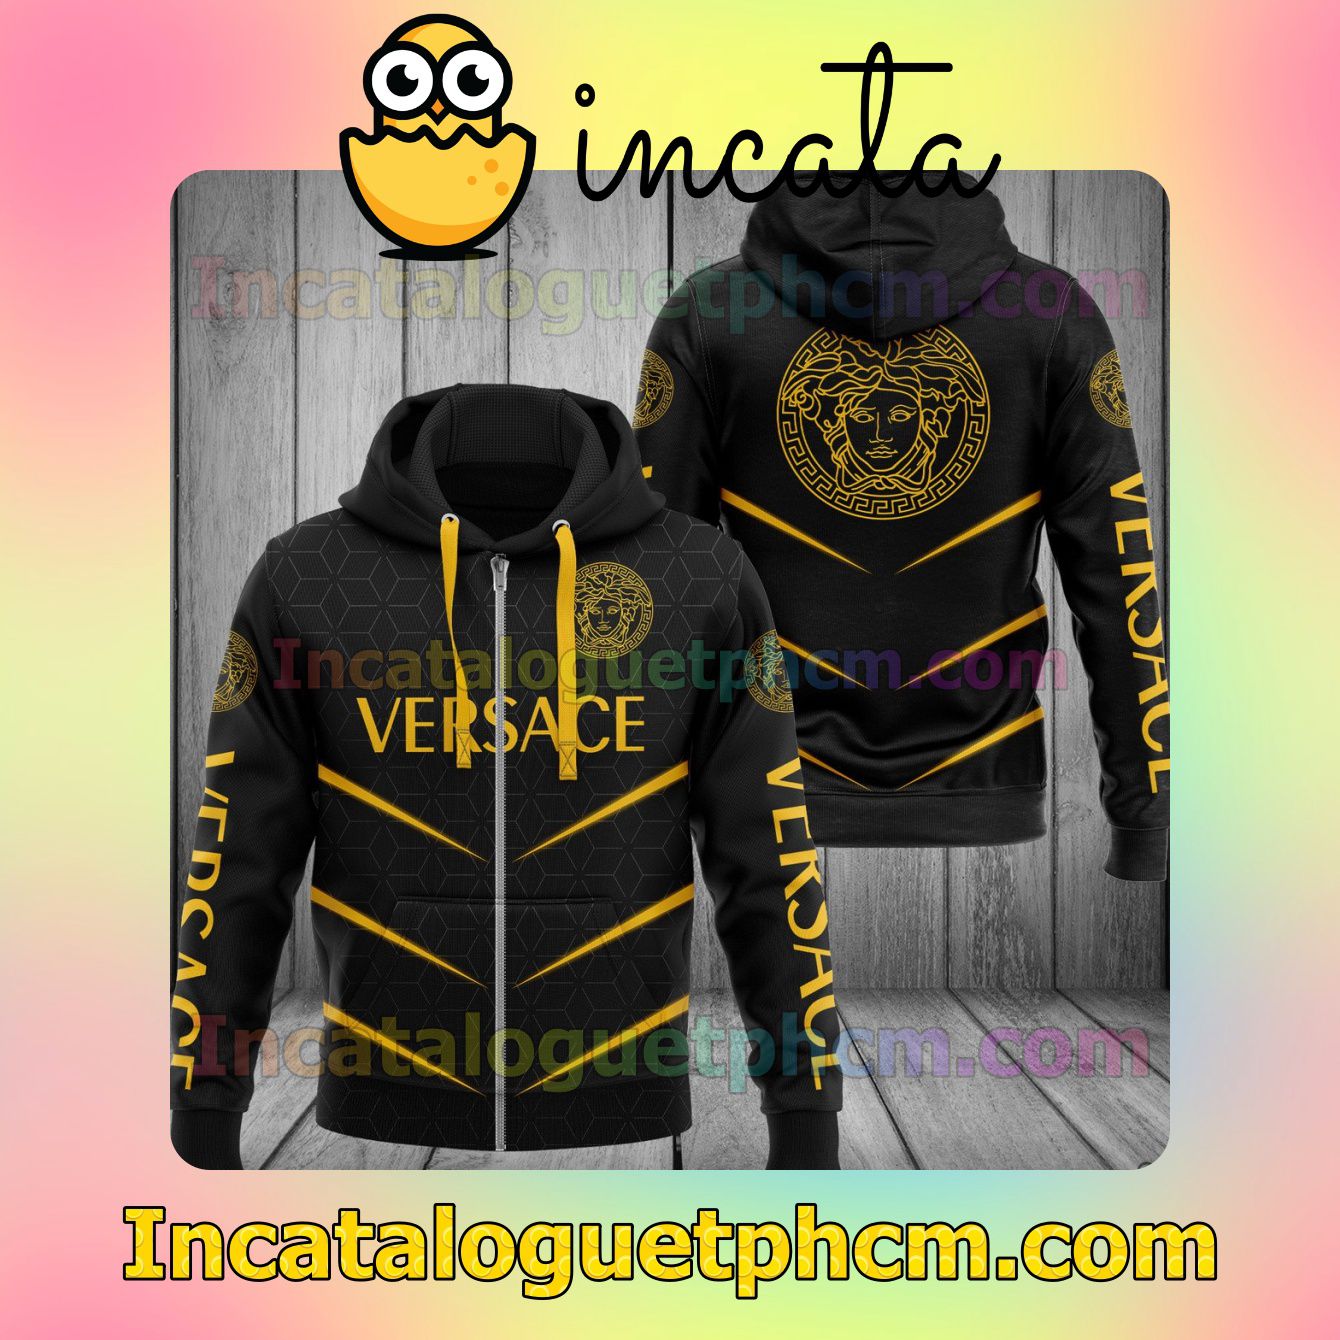 Versace Brand Name And Logo Metro Rhombus Black Long Sleeve Jacket Mens Hoodie